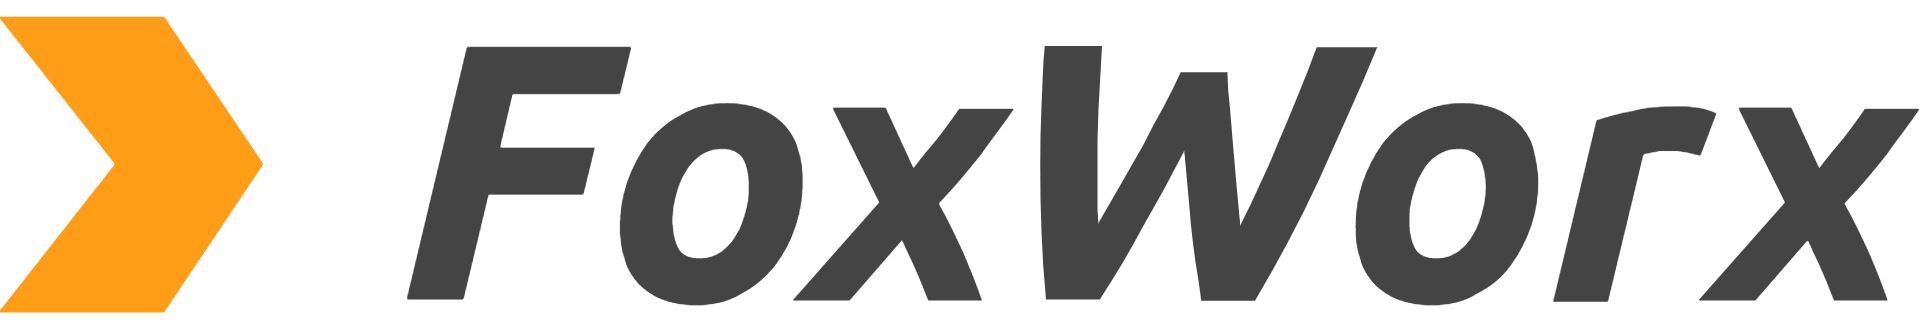 FoxWorx UG